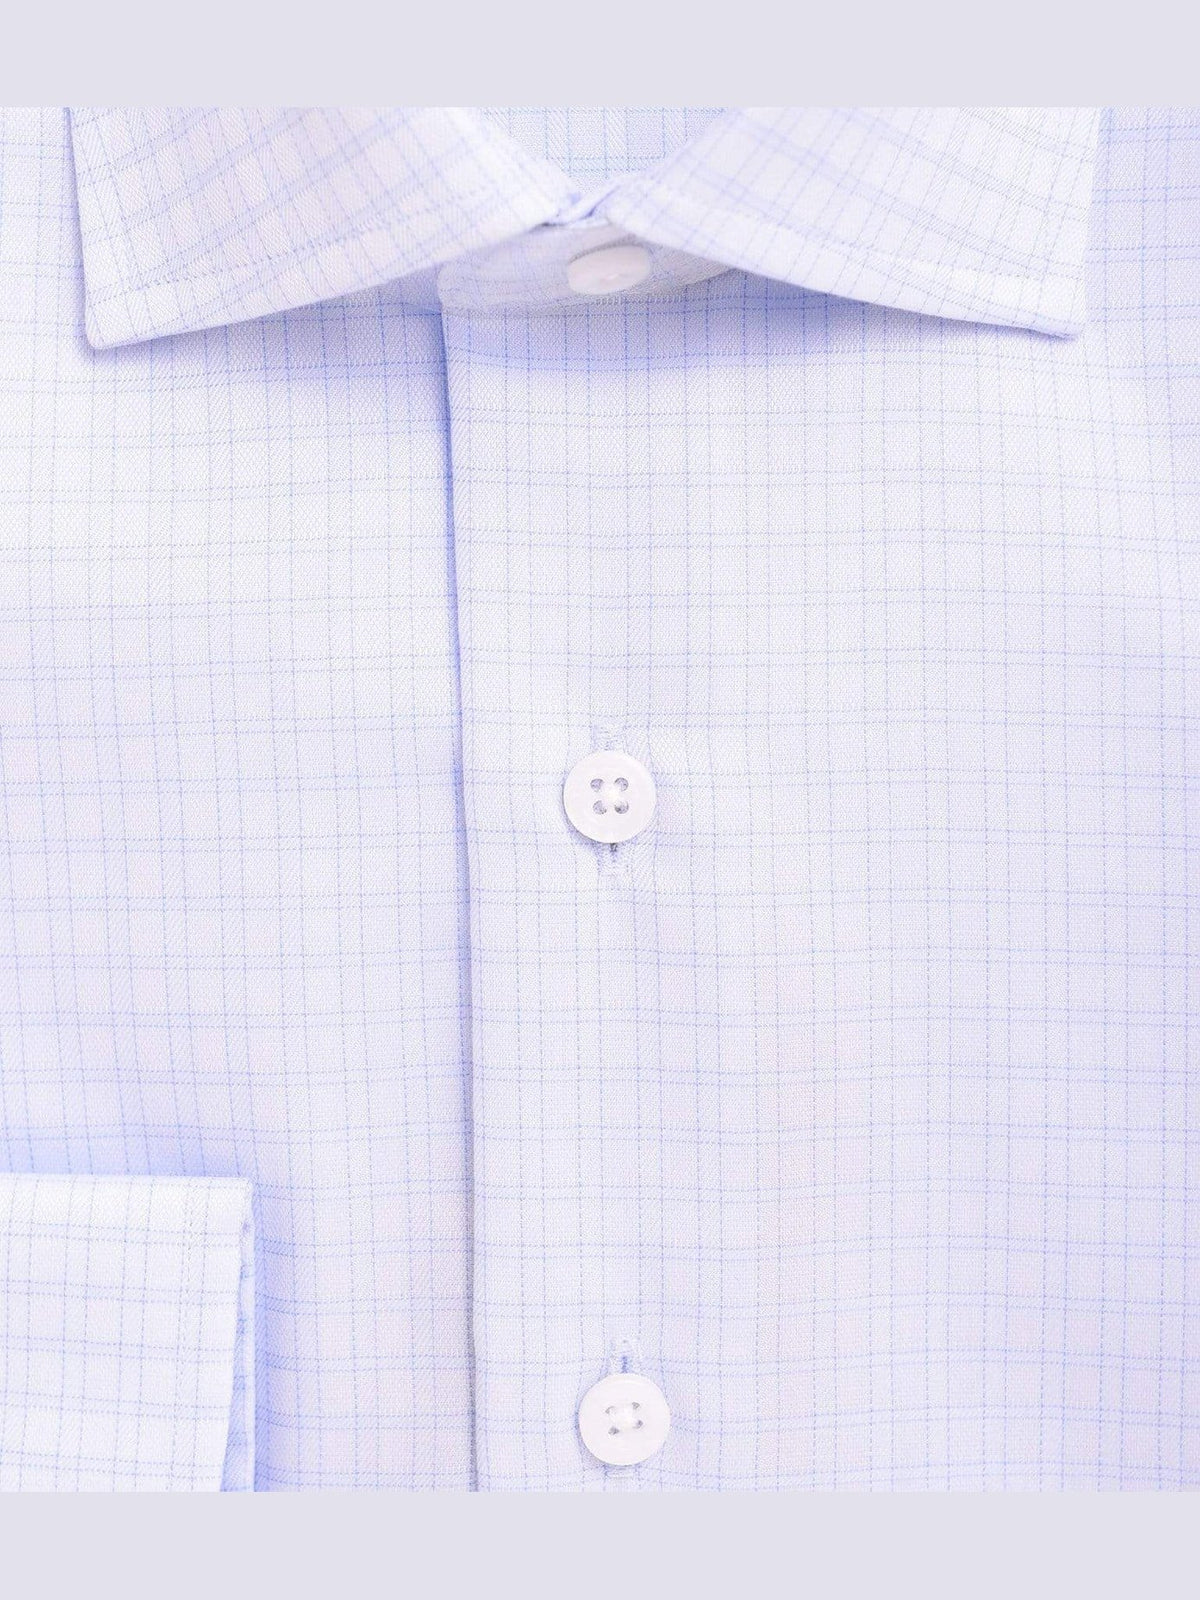 Proper Shirtings SHIRTS Mens Slim Fit Blue Plaid Spread Collar 100 2 Ply Wrinkle Free Cotton Dress Shirt